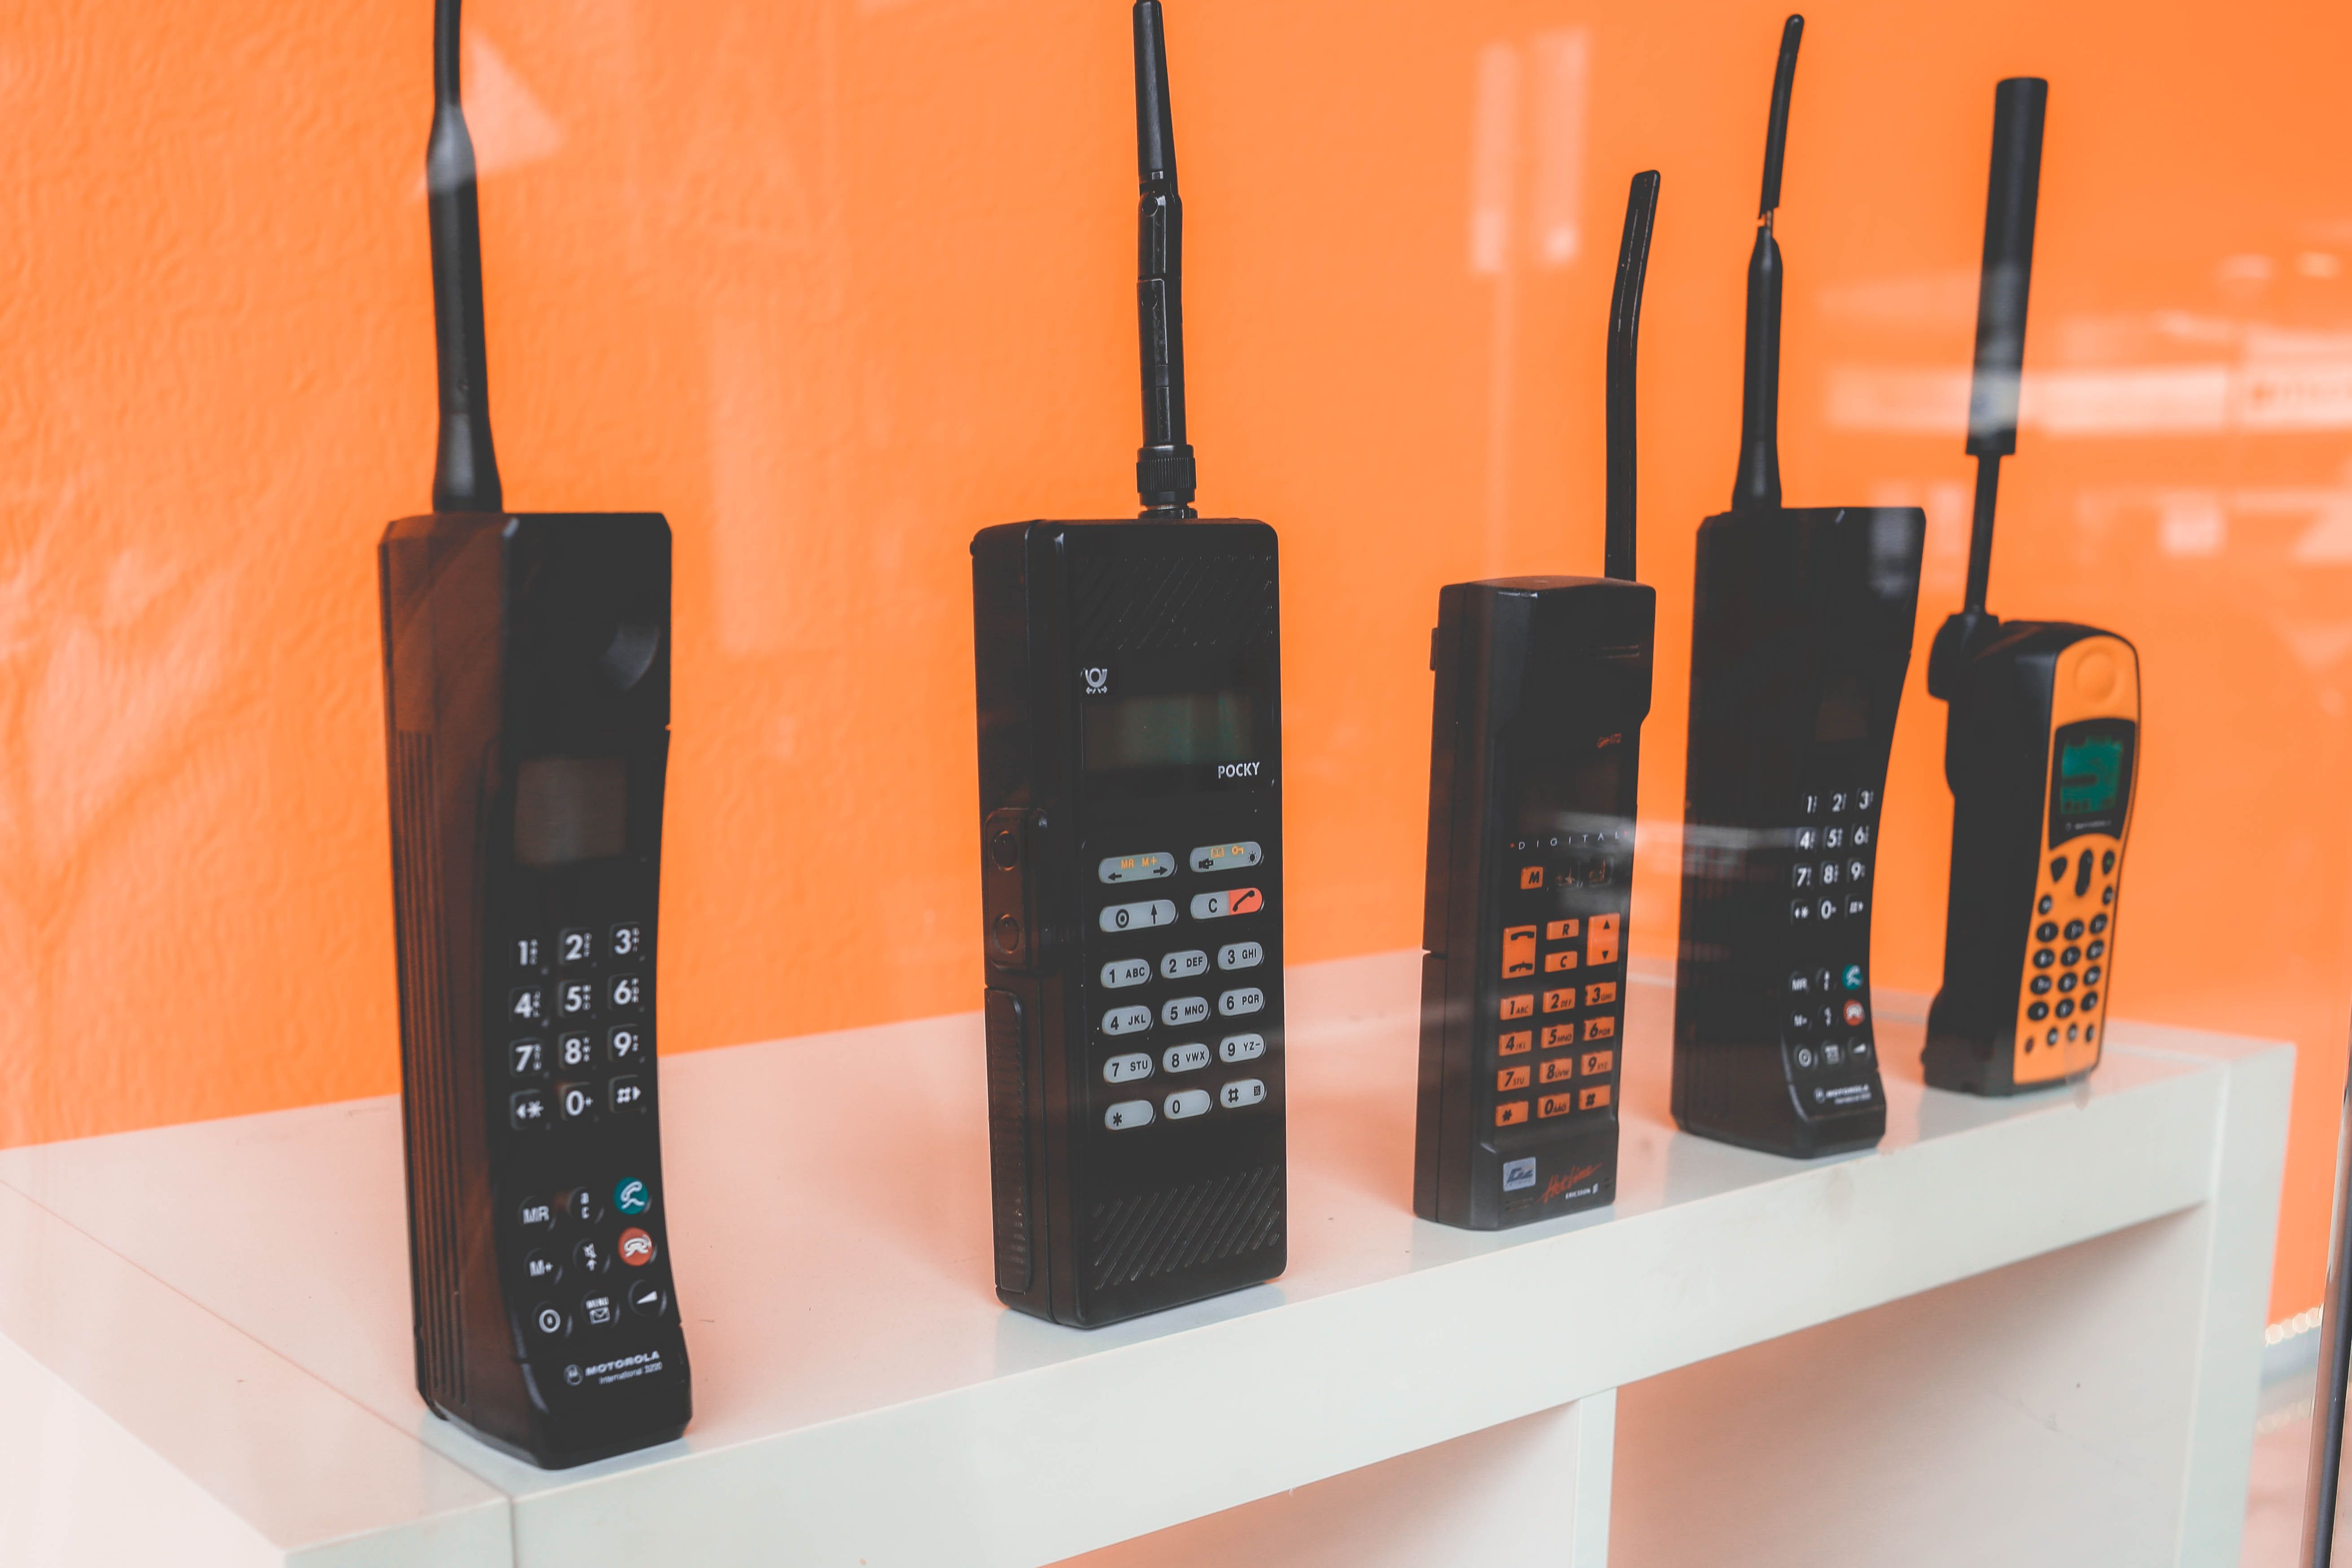 nokia brick phone - Come funzionano i vecchi telefoni cellulari Nokia e perché stanno diventando di nuovo popolari?